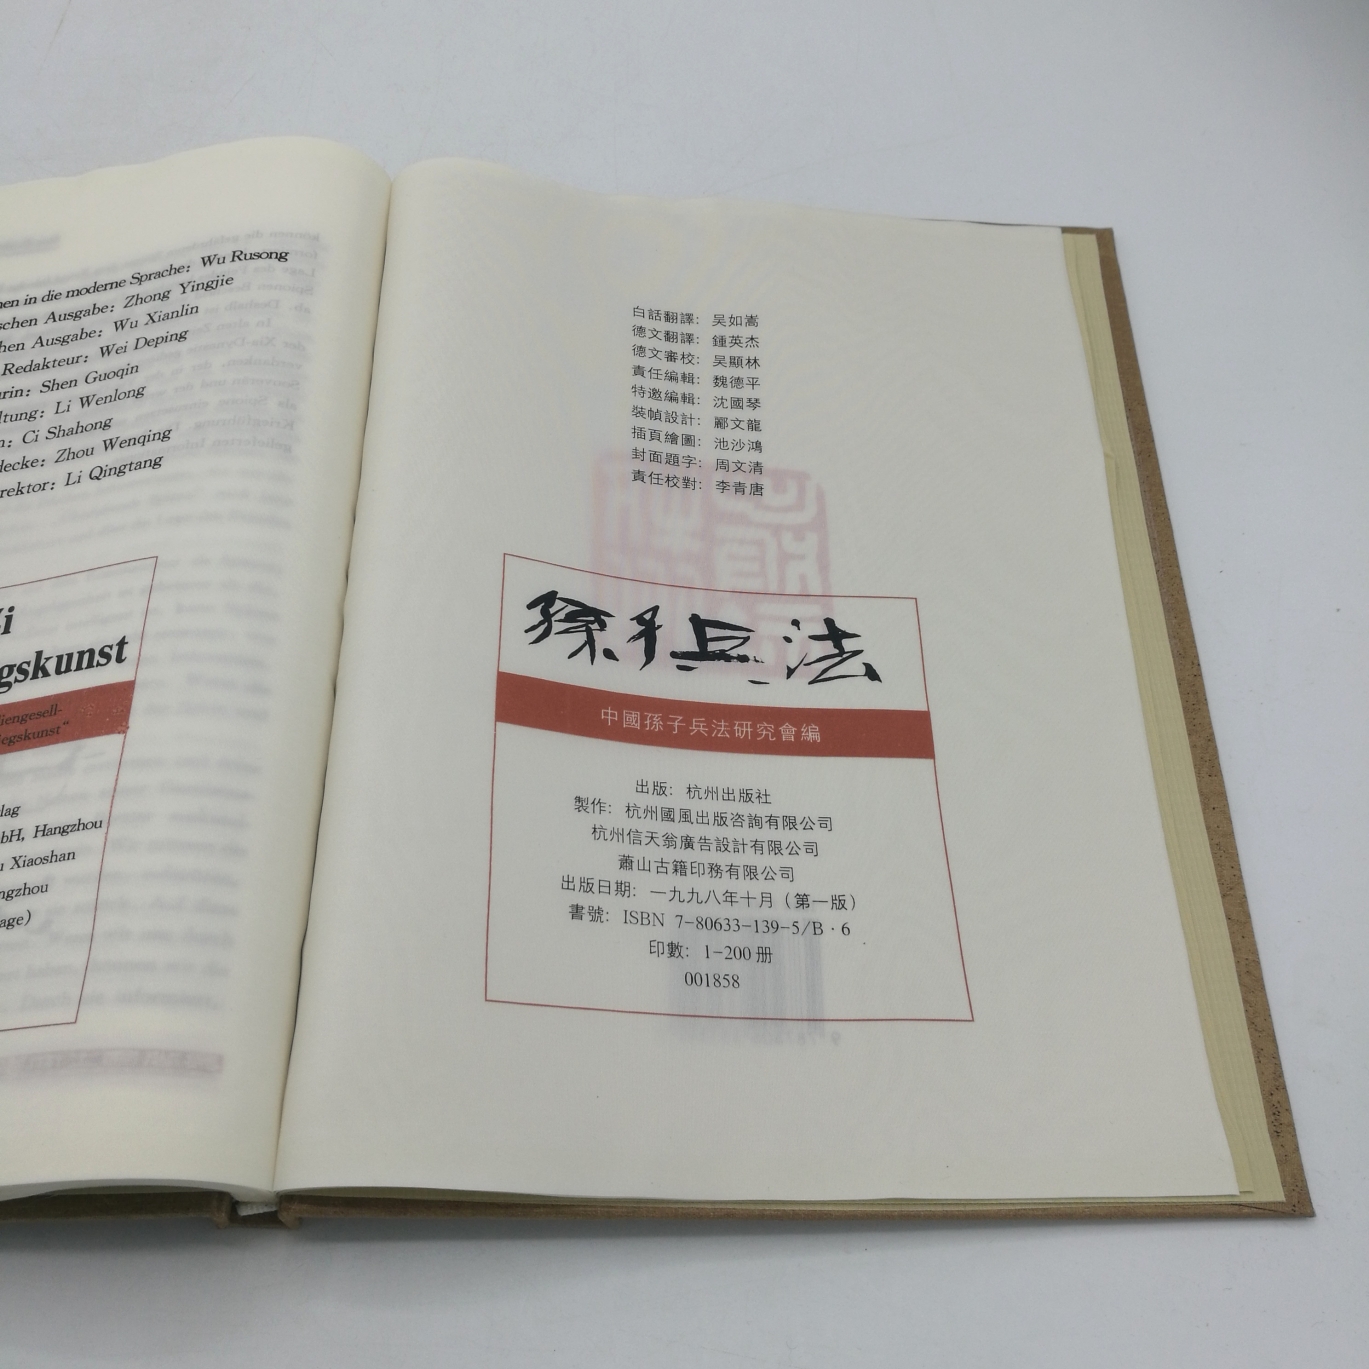 Hangzhou-Verlag (Hrsg.), : Sun Zi über die Kriegskunst 